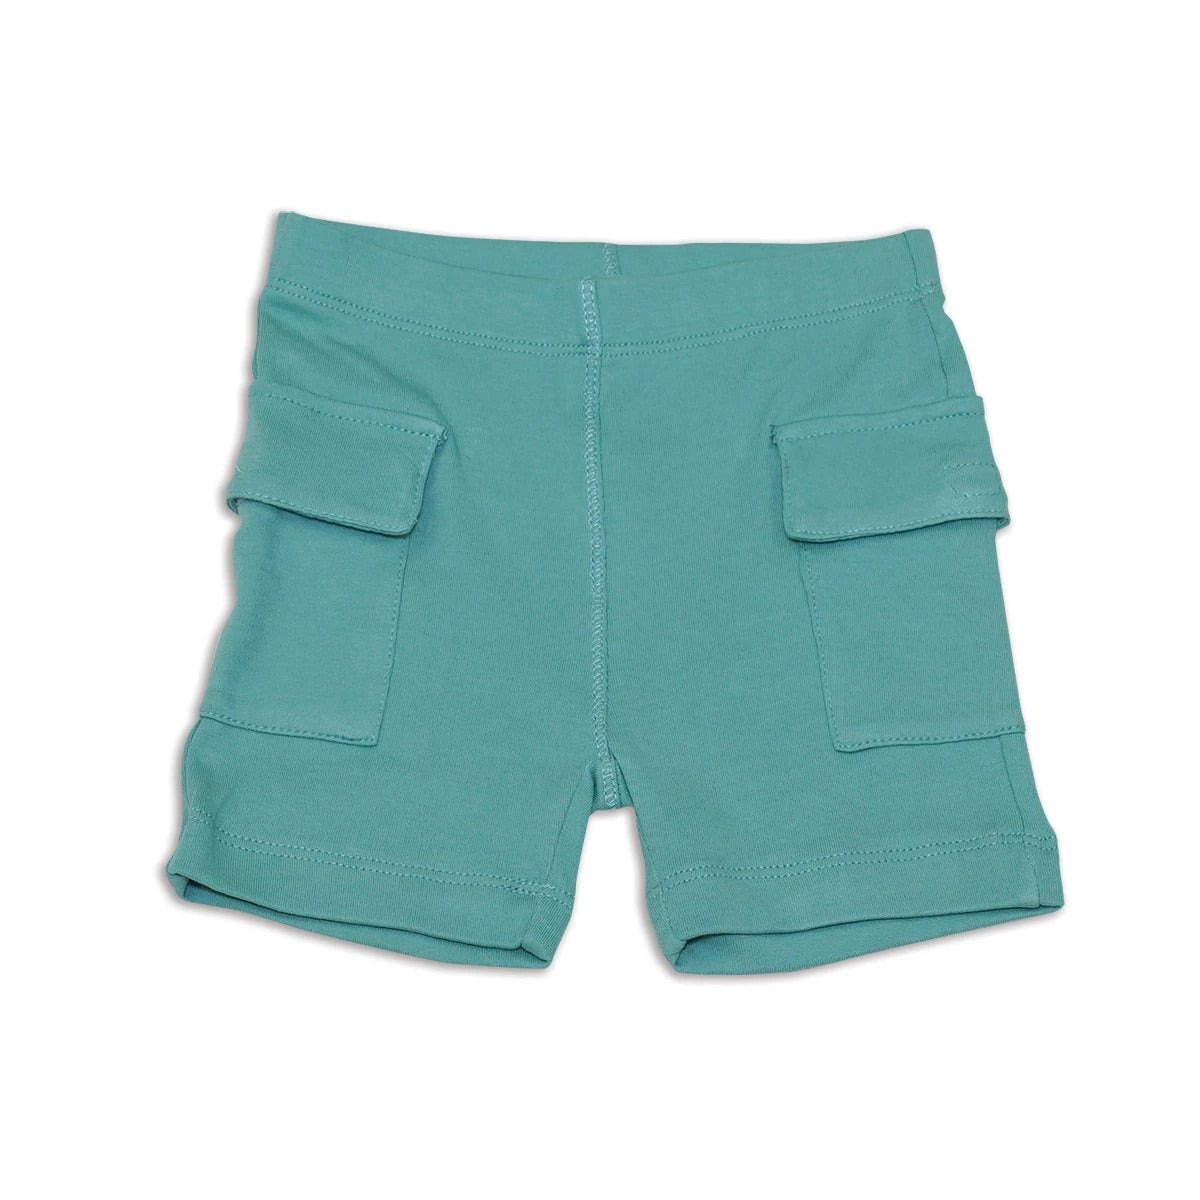 Bamboo Cargo Pocket Shorts